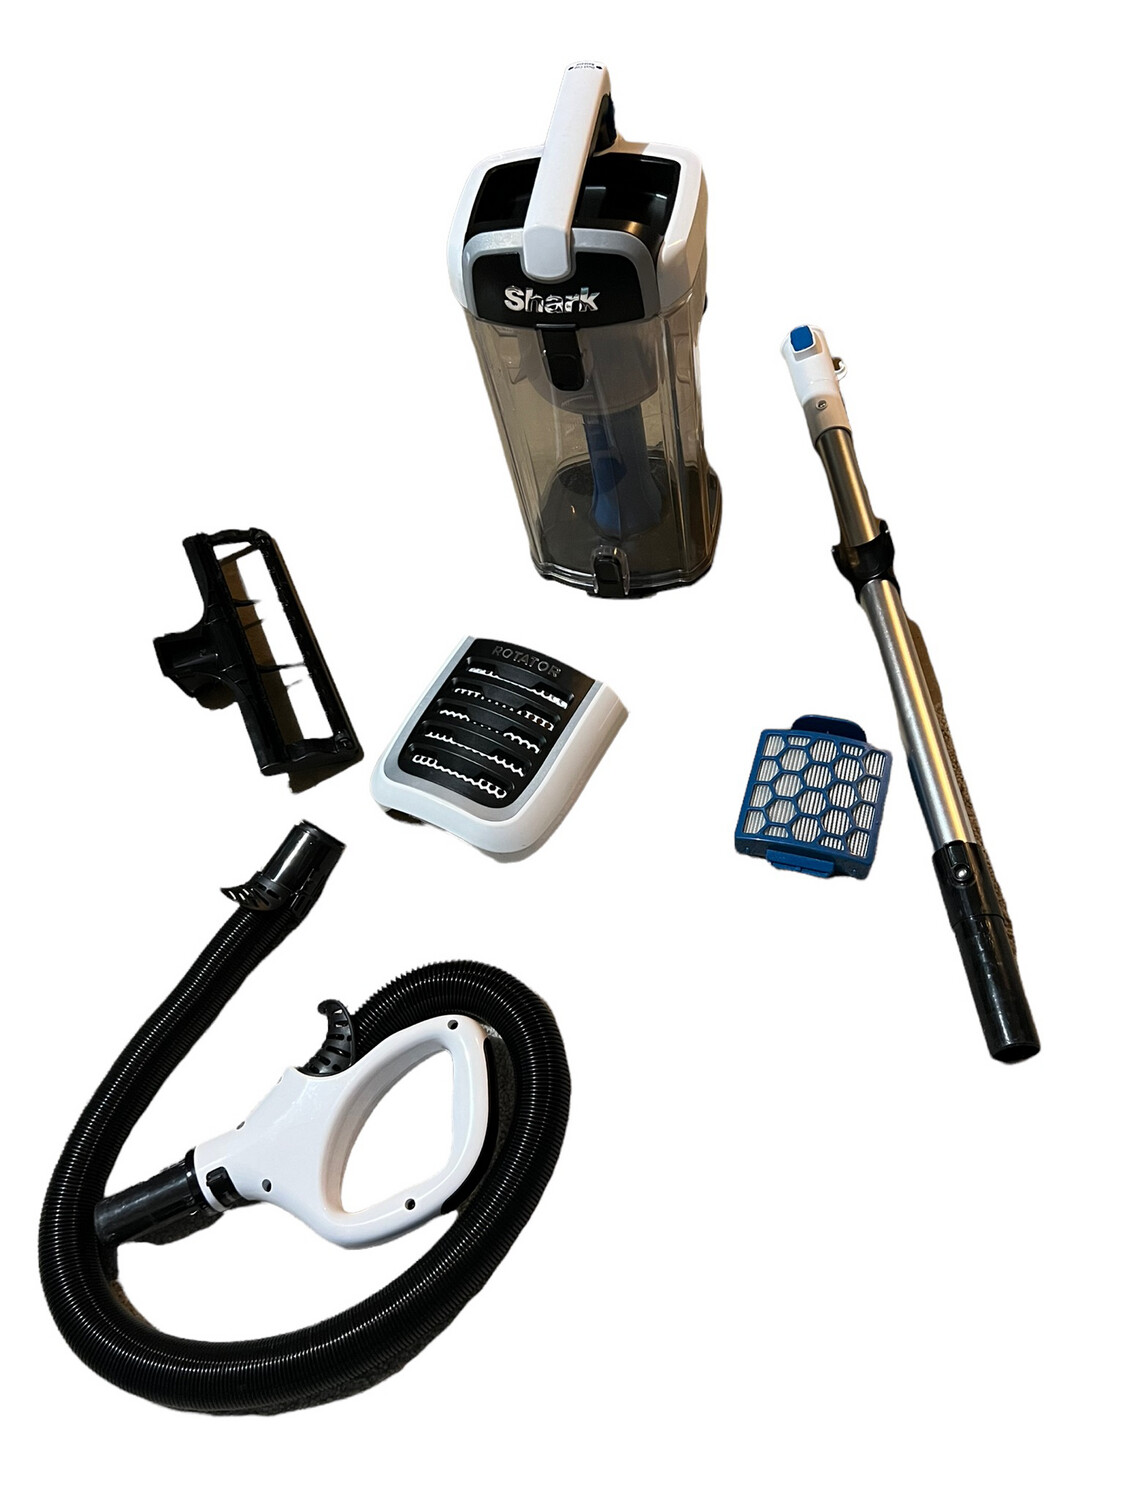 Shark Rotator NV255 Pet Plus Upright Vacuum -Select a Part from Menu-